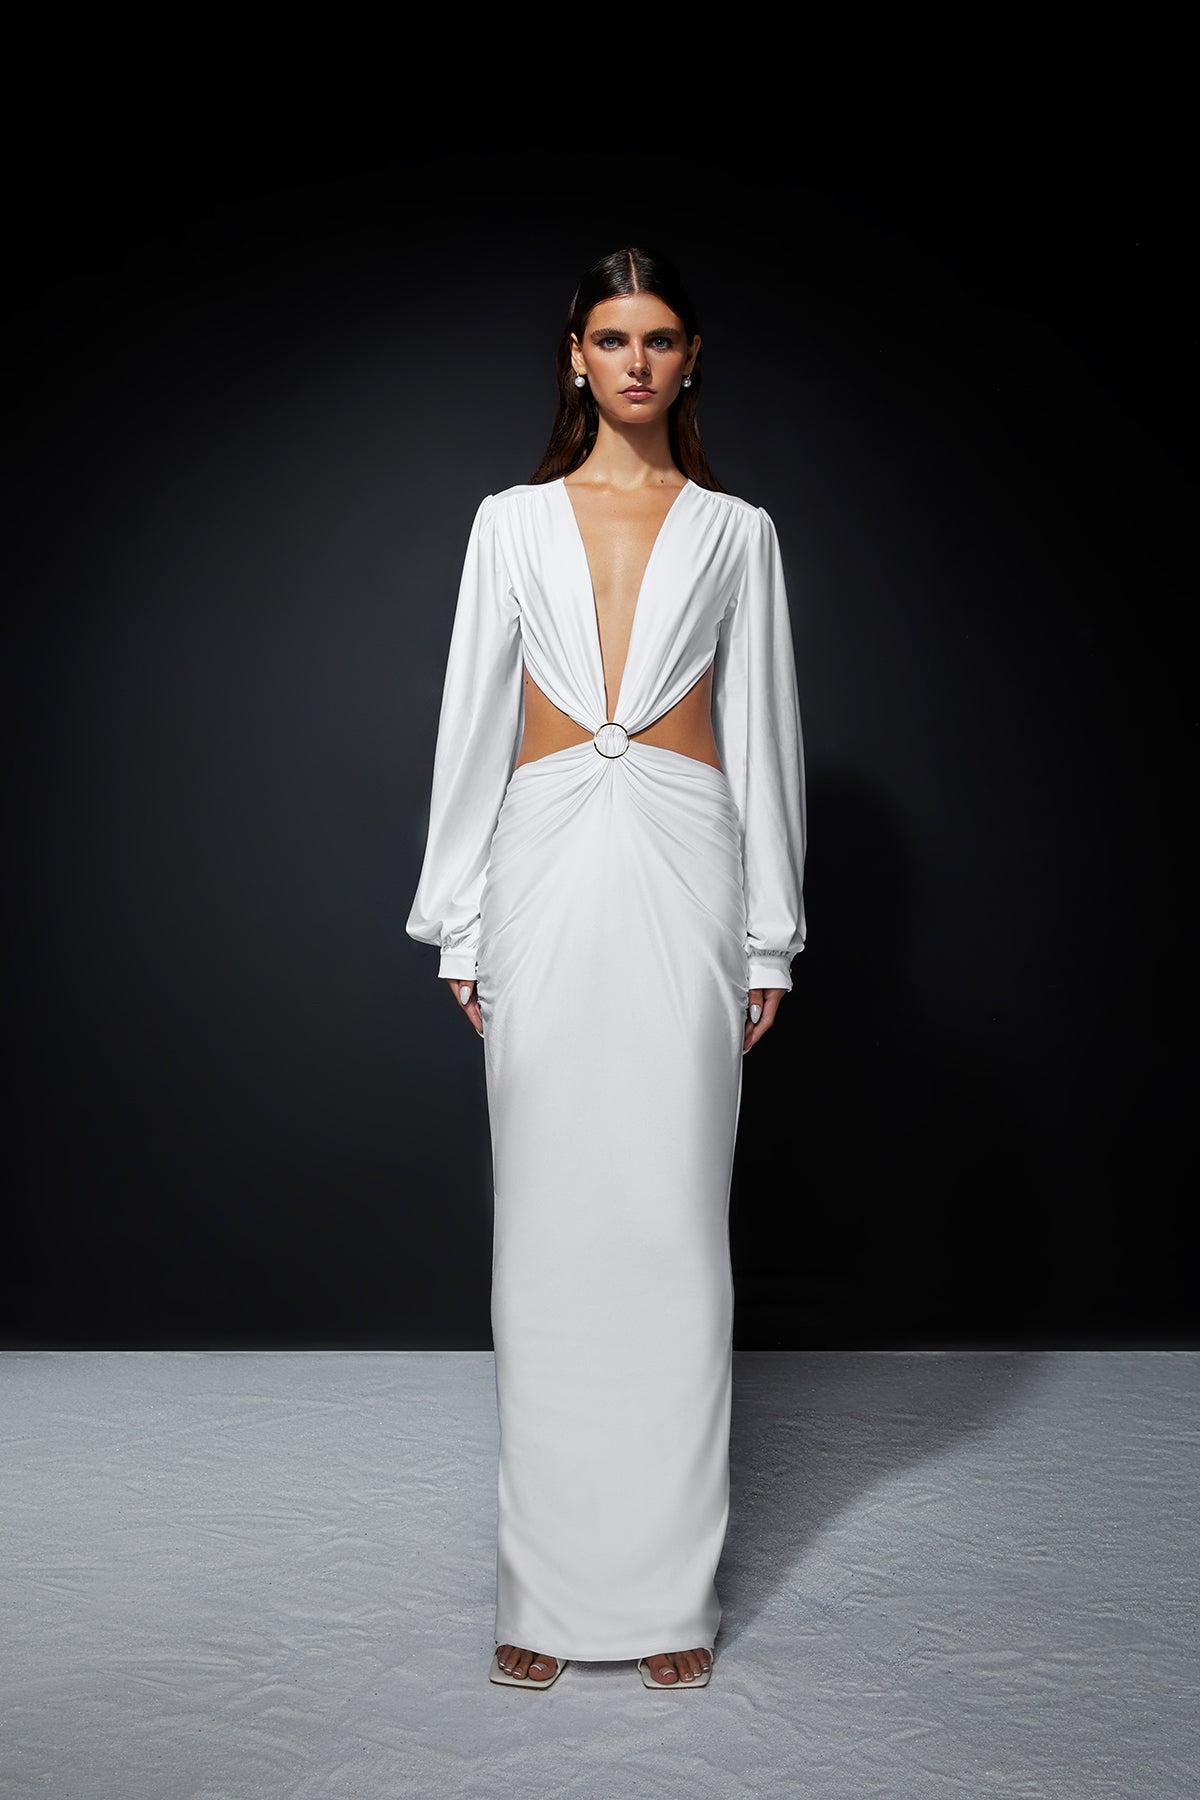 Kove Dress - White